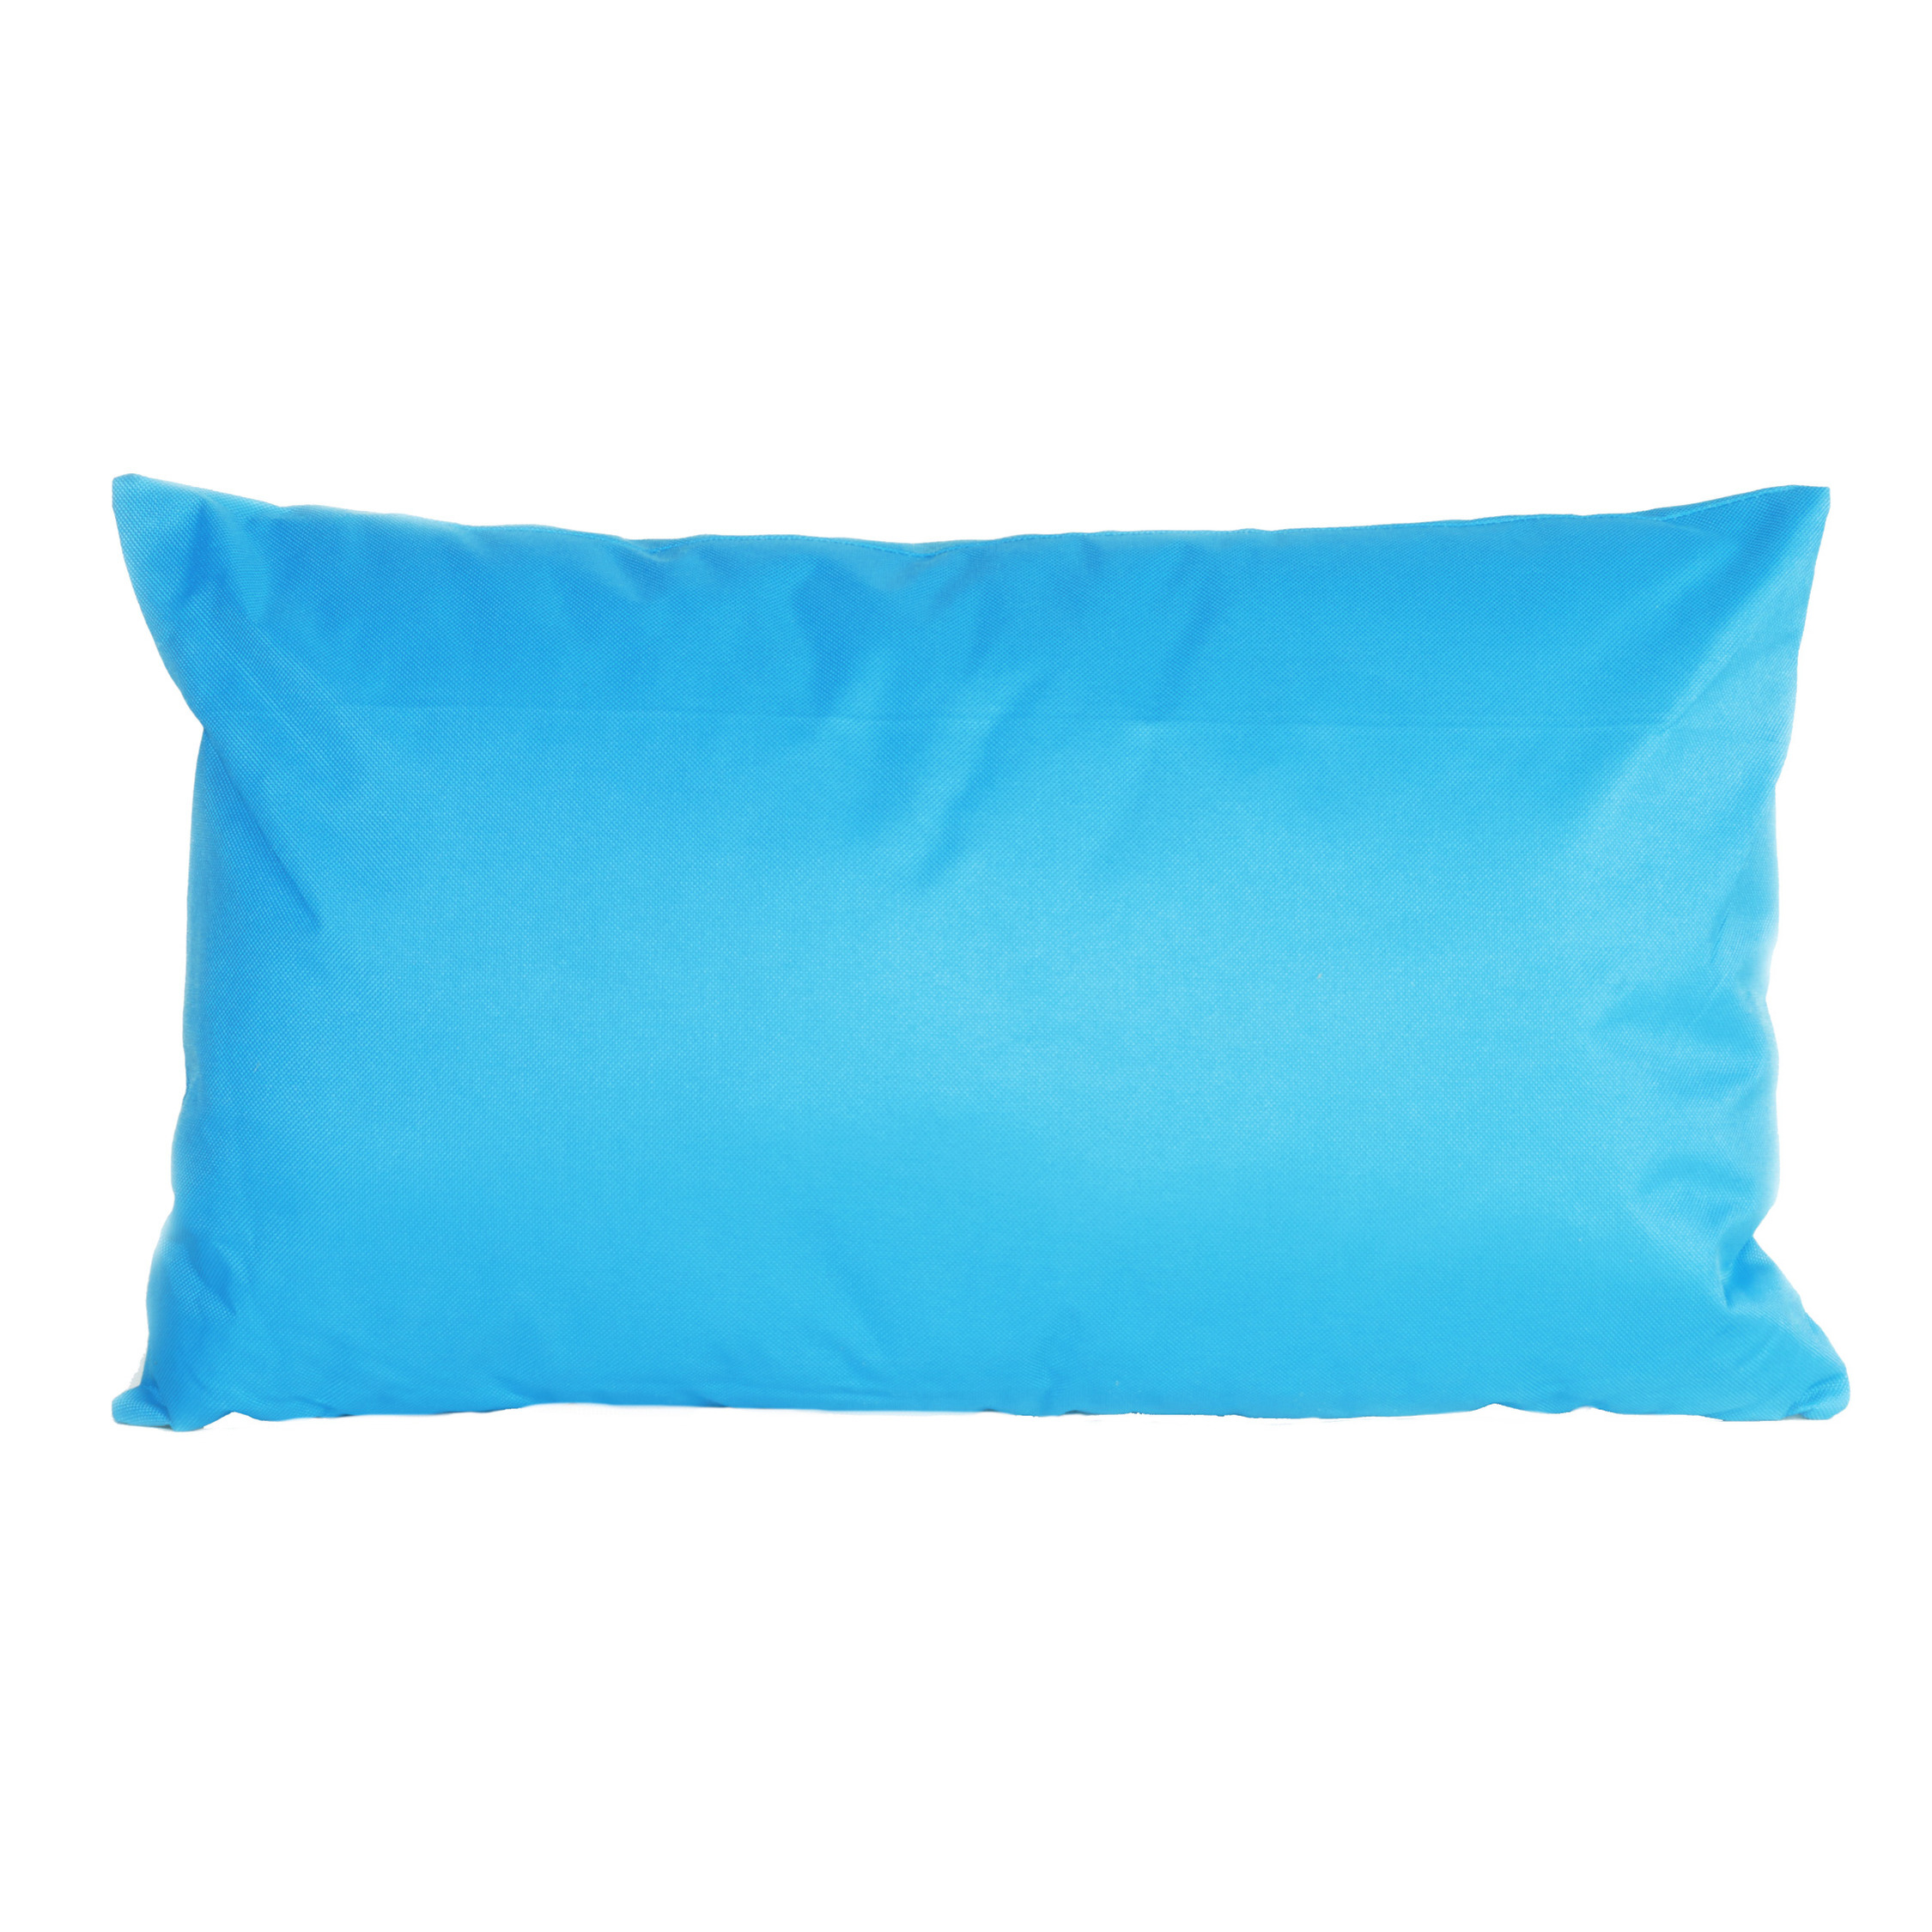 Bank-sier kussens voor binnen en buiten in de kleur lichtblauw 30 x 50 cm